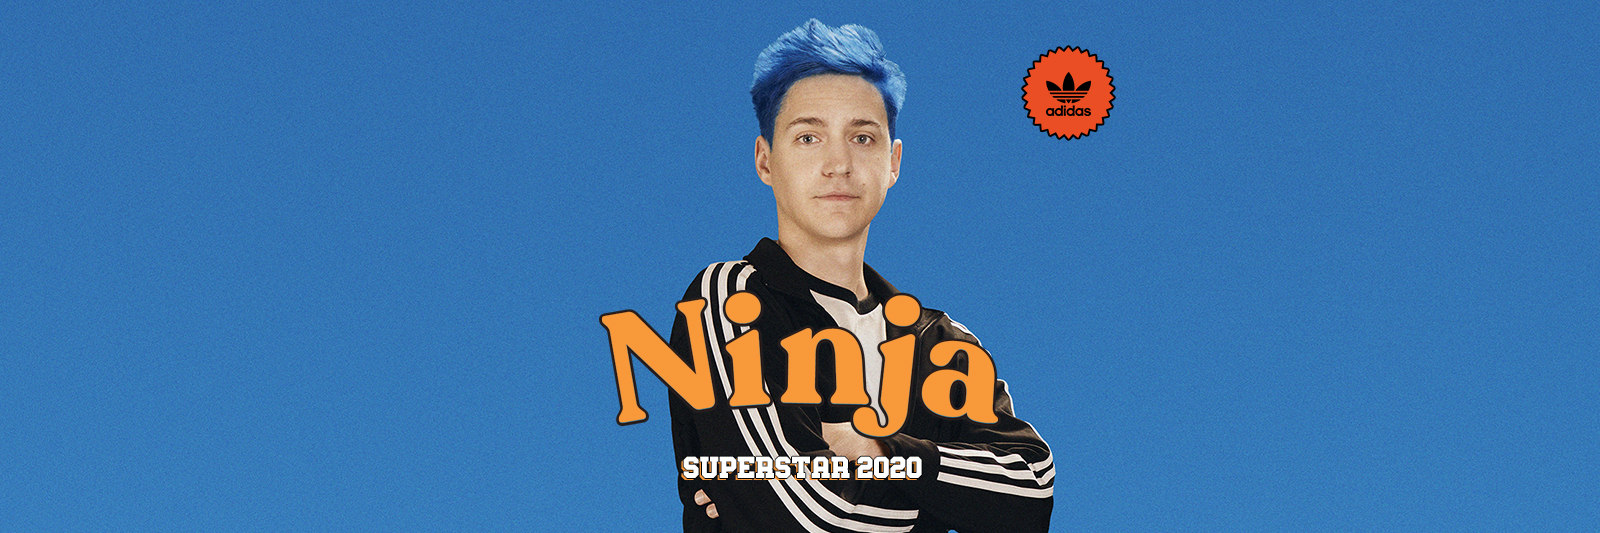 ninja and adidas